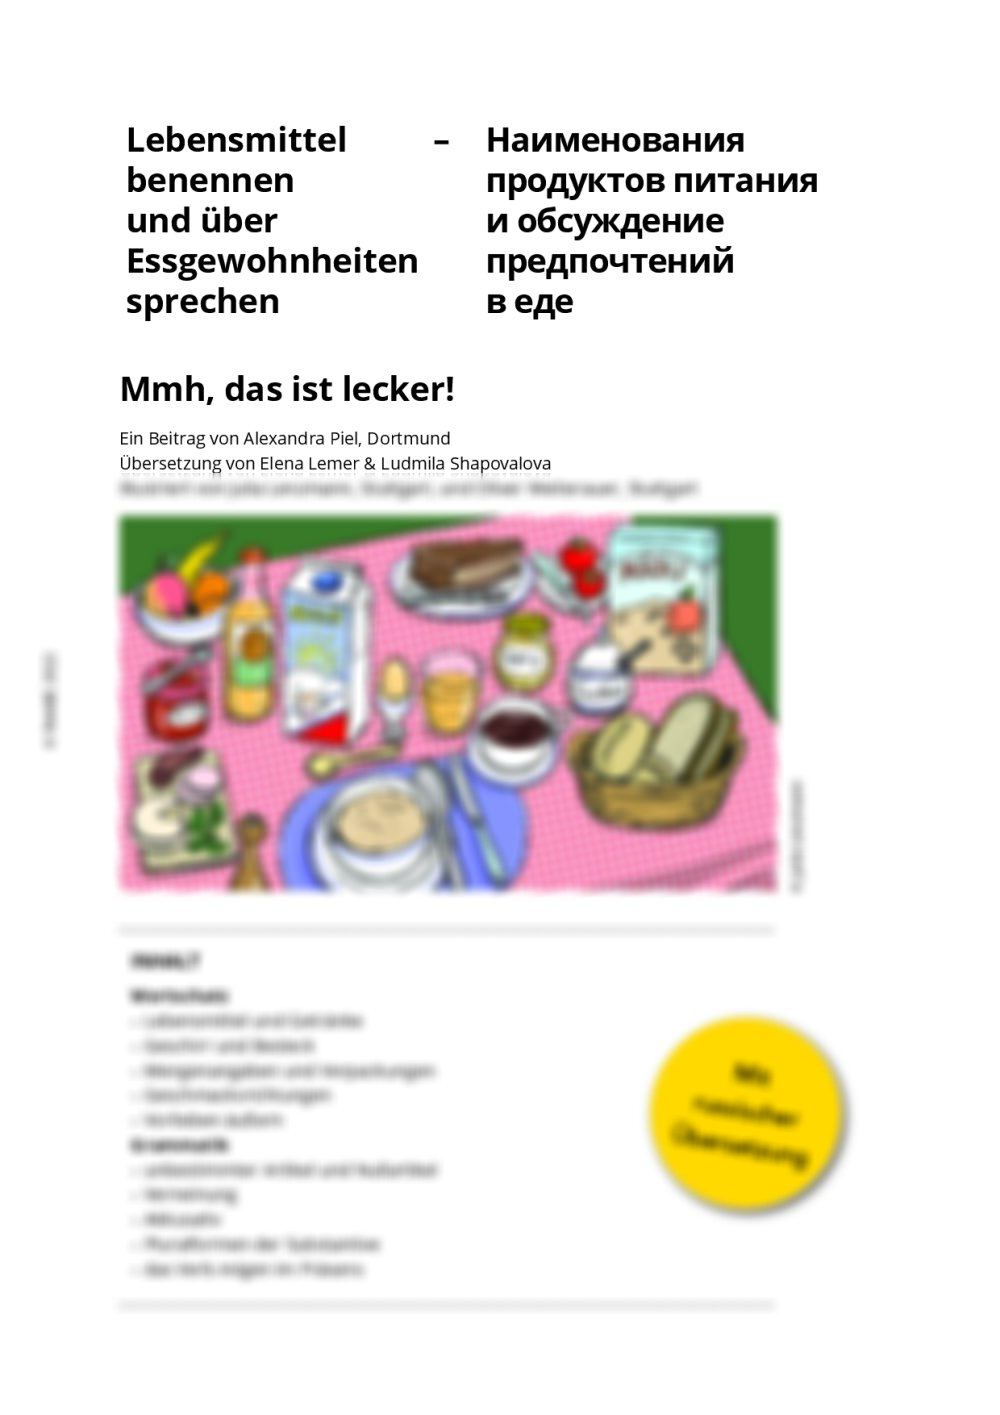 Lebensmittel und Essgewohnheiten (mit russischer Übersetzung) - Seite 1